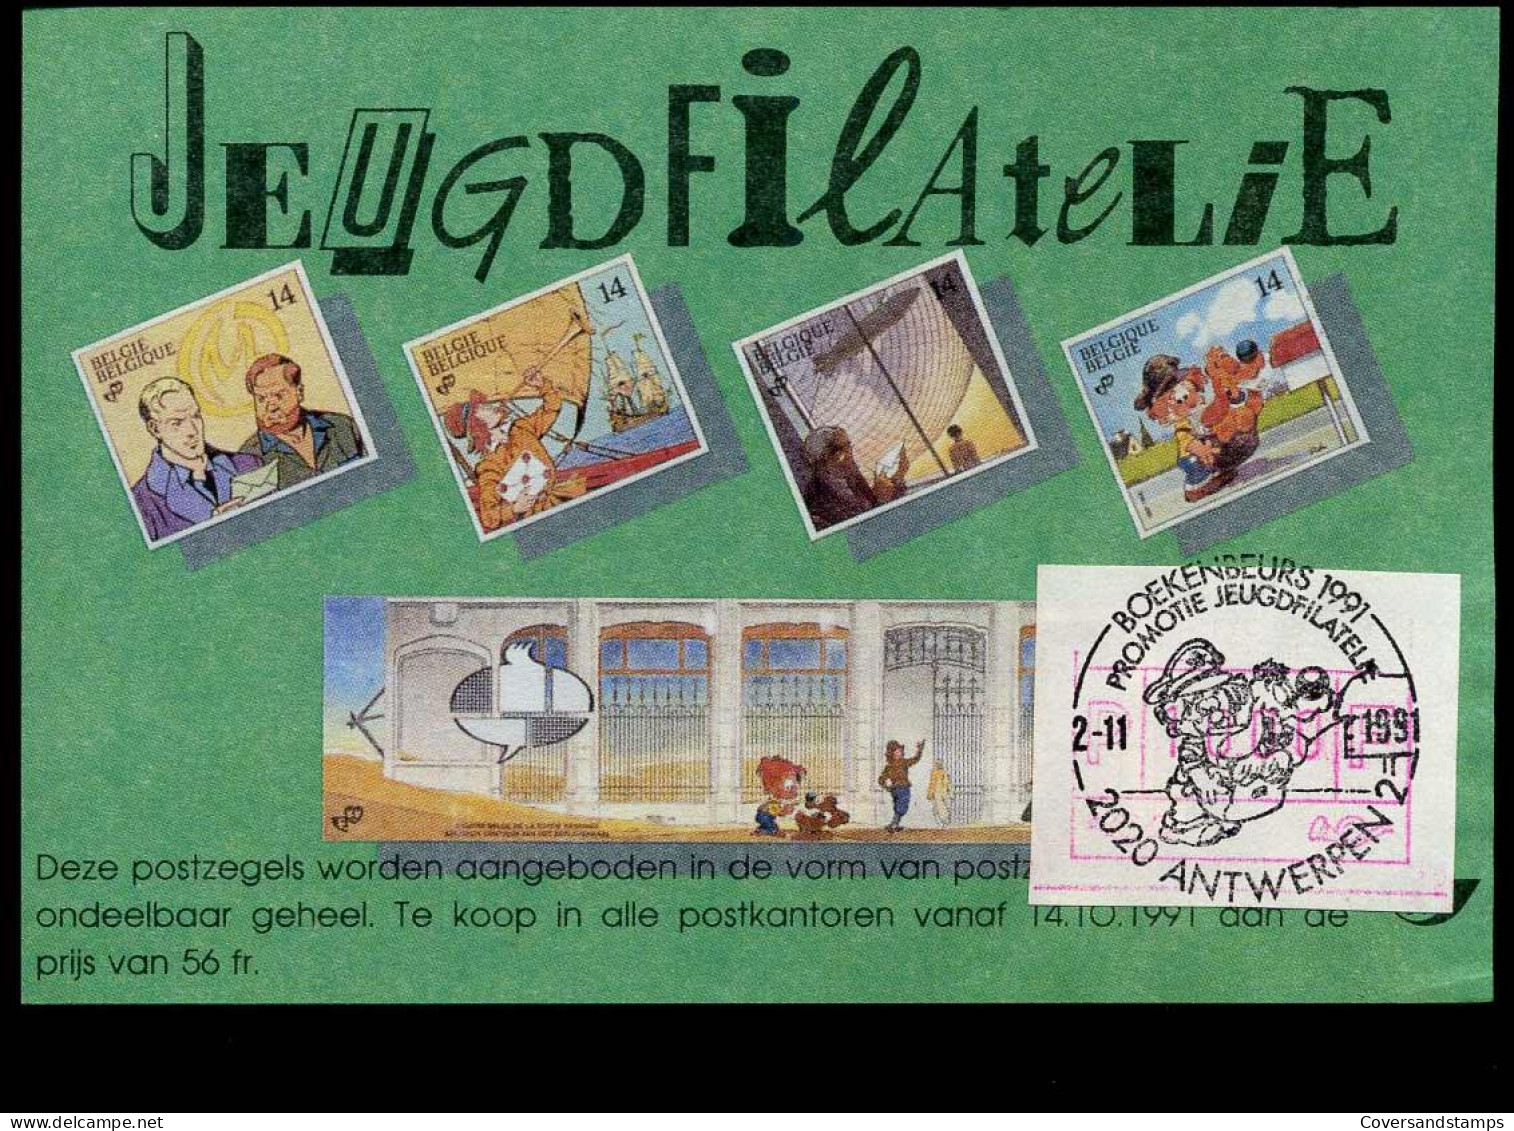 Boekenbeurs 1991 - Promotie Jeugdfilatelie, Antwerpen - Commemorative Documents